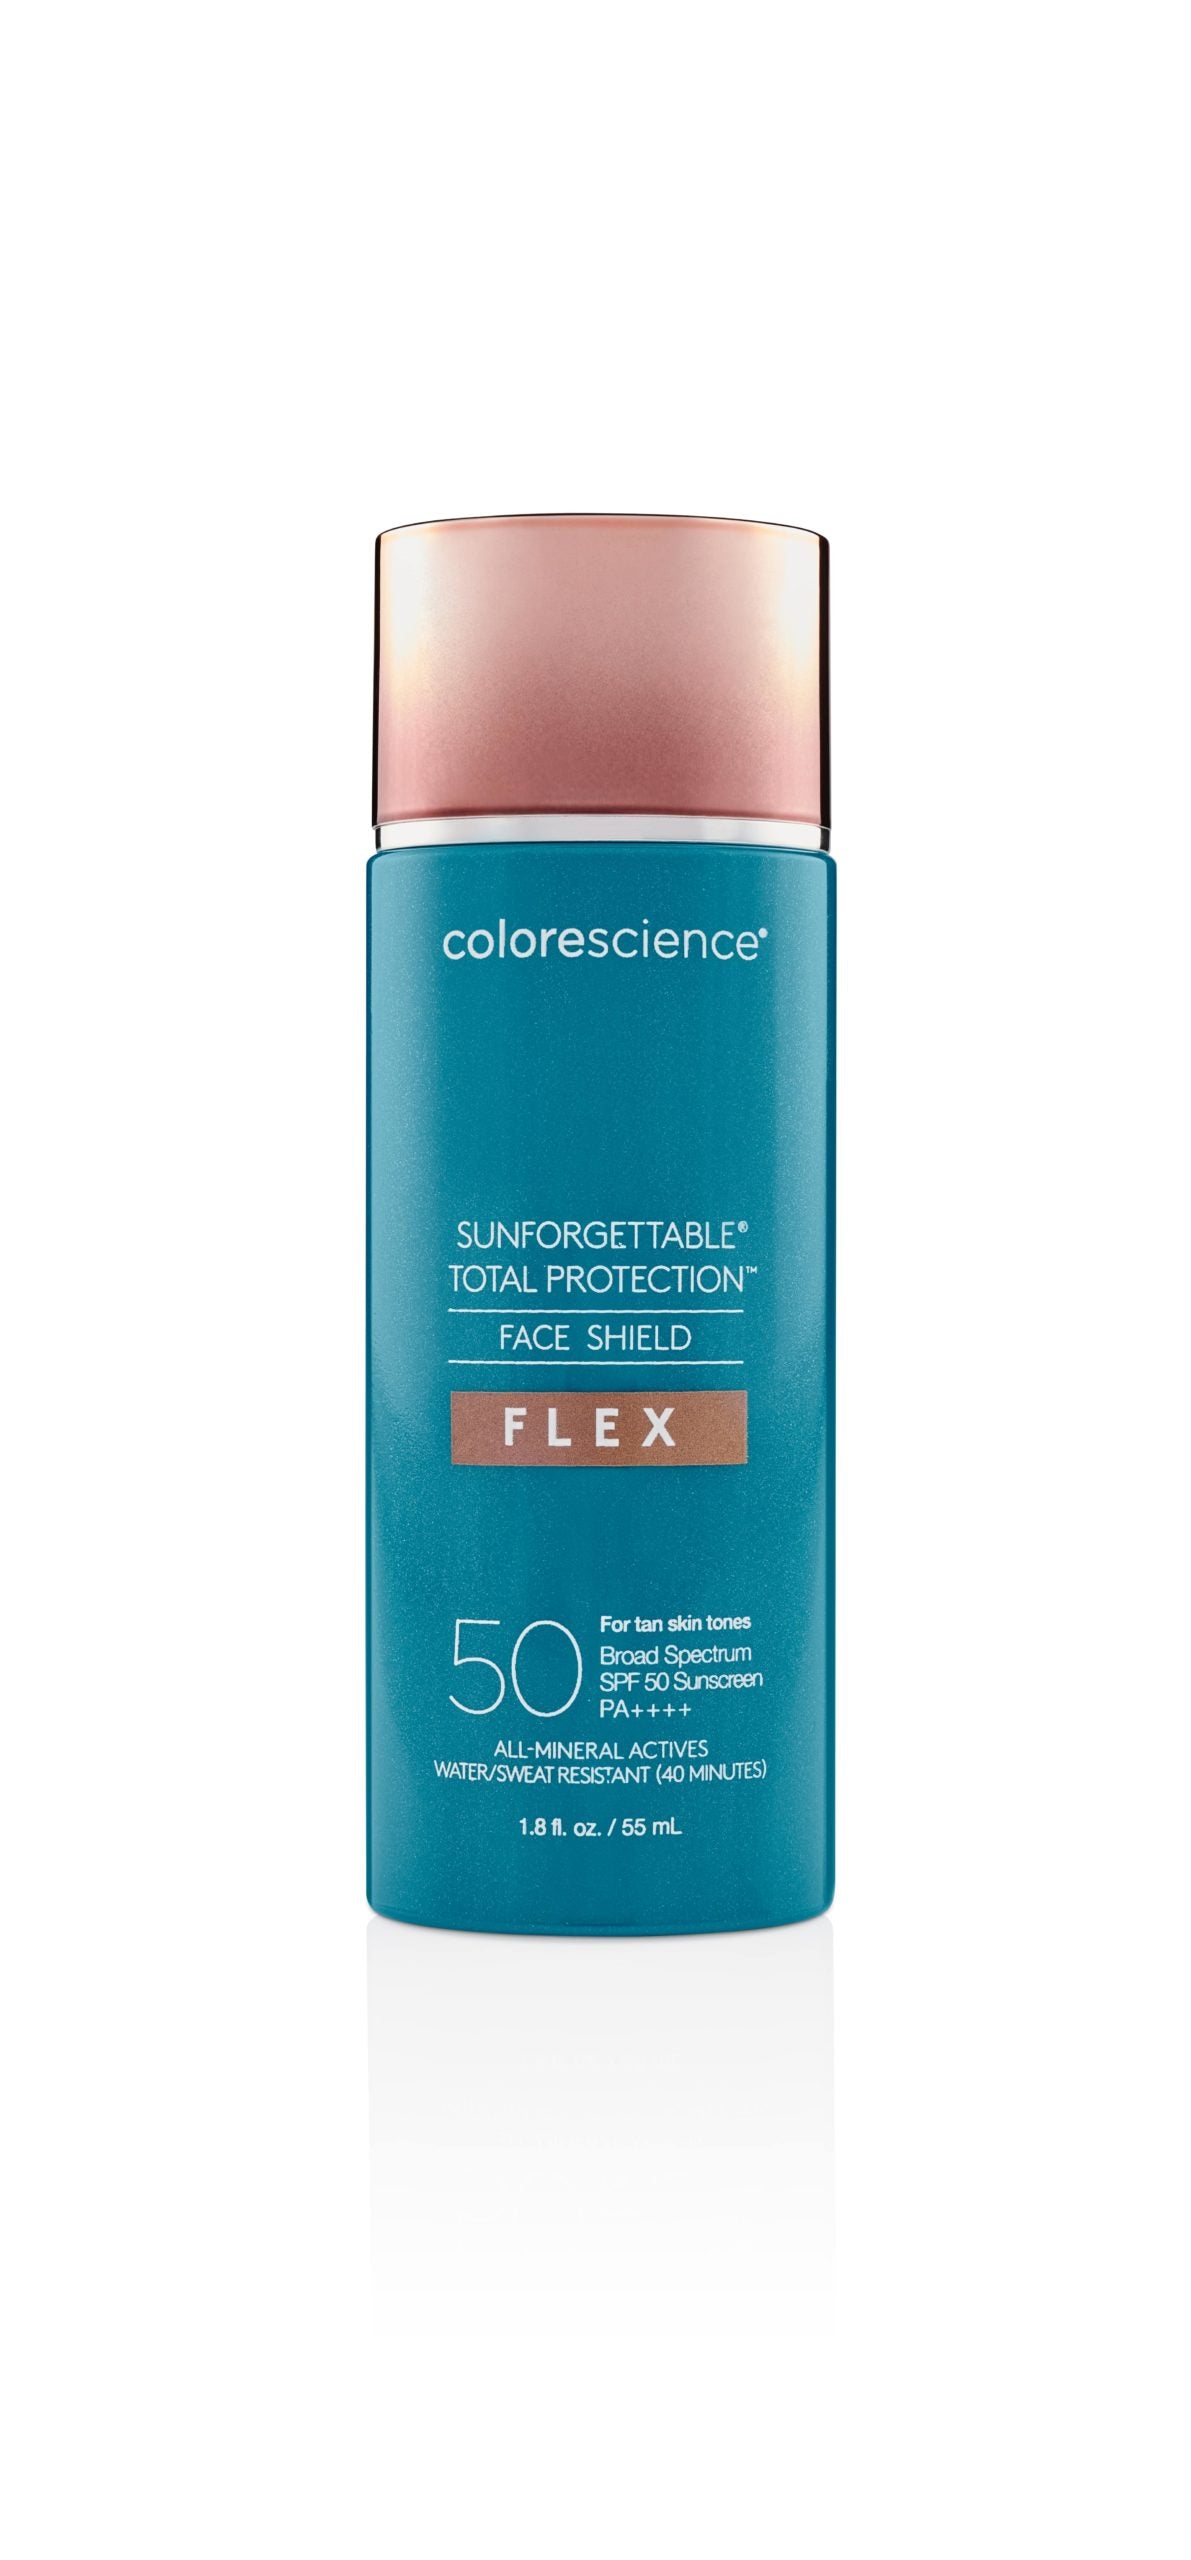 Colorescience - Face Shield Flex SPF 50